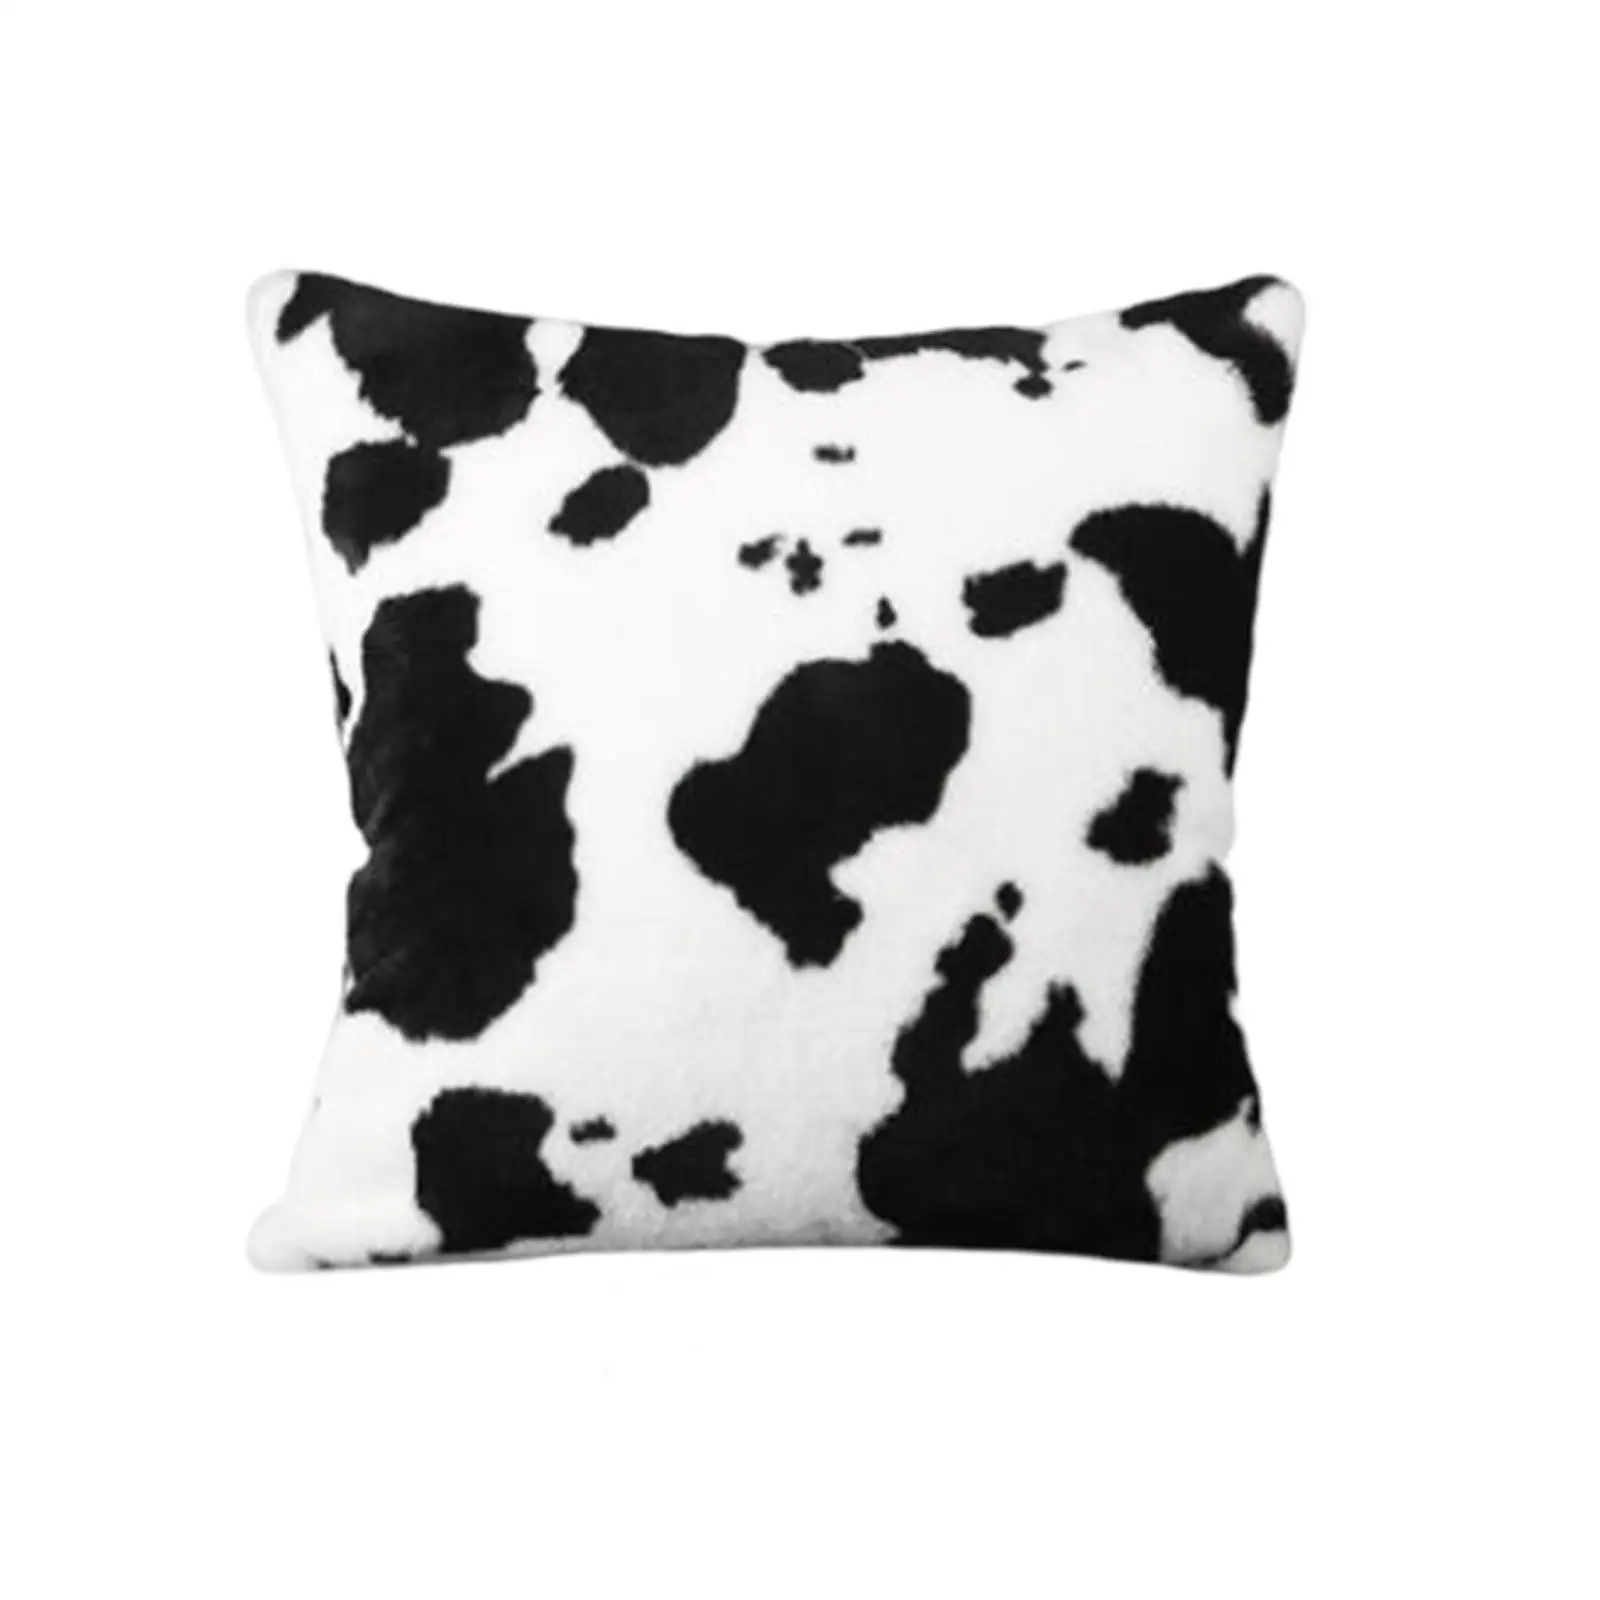 Cow Spots Pattern 45x45cm Throw Pillow Cases Decoration Decorative